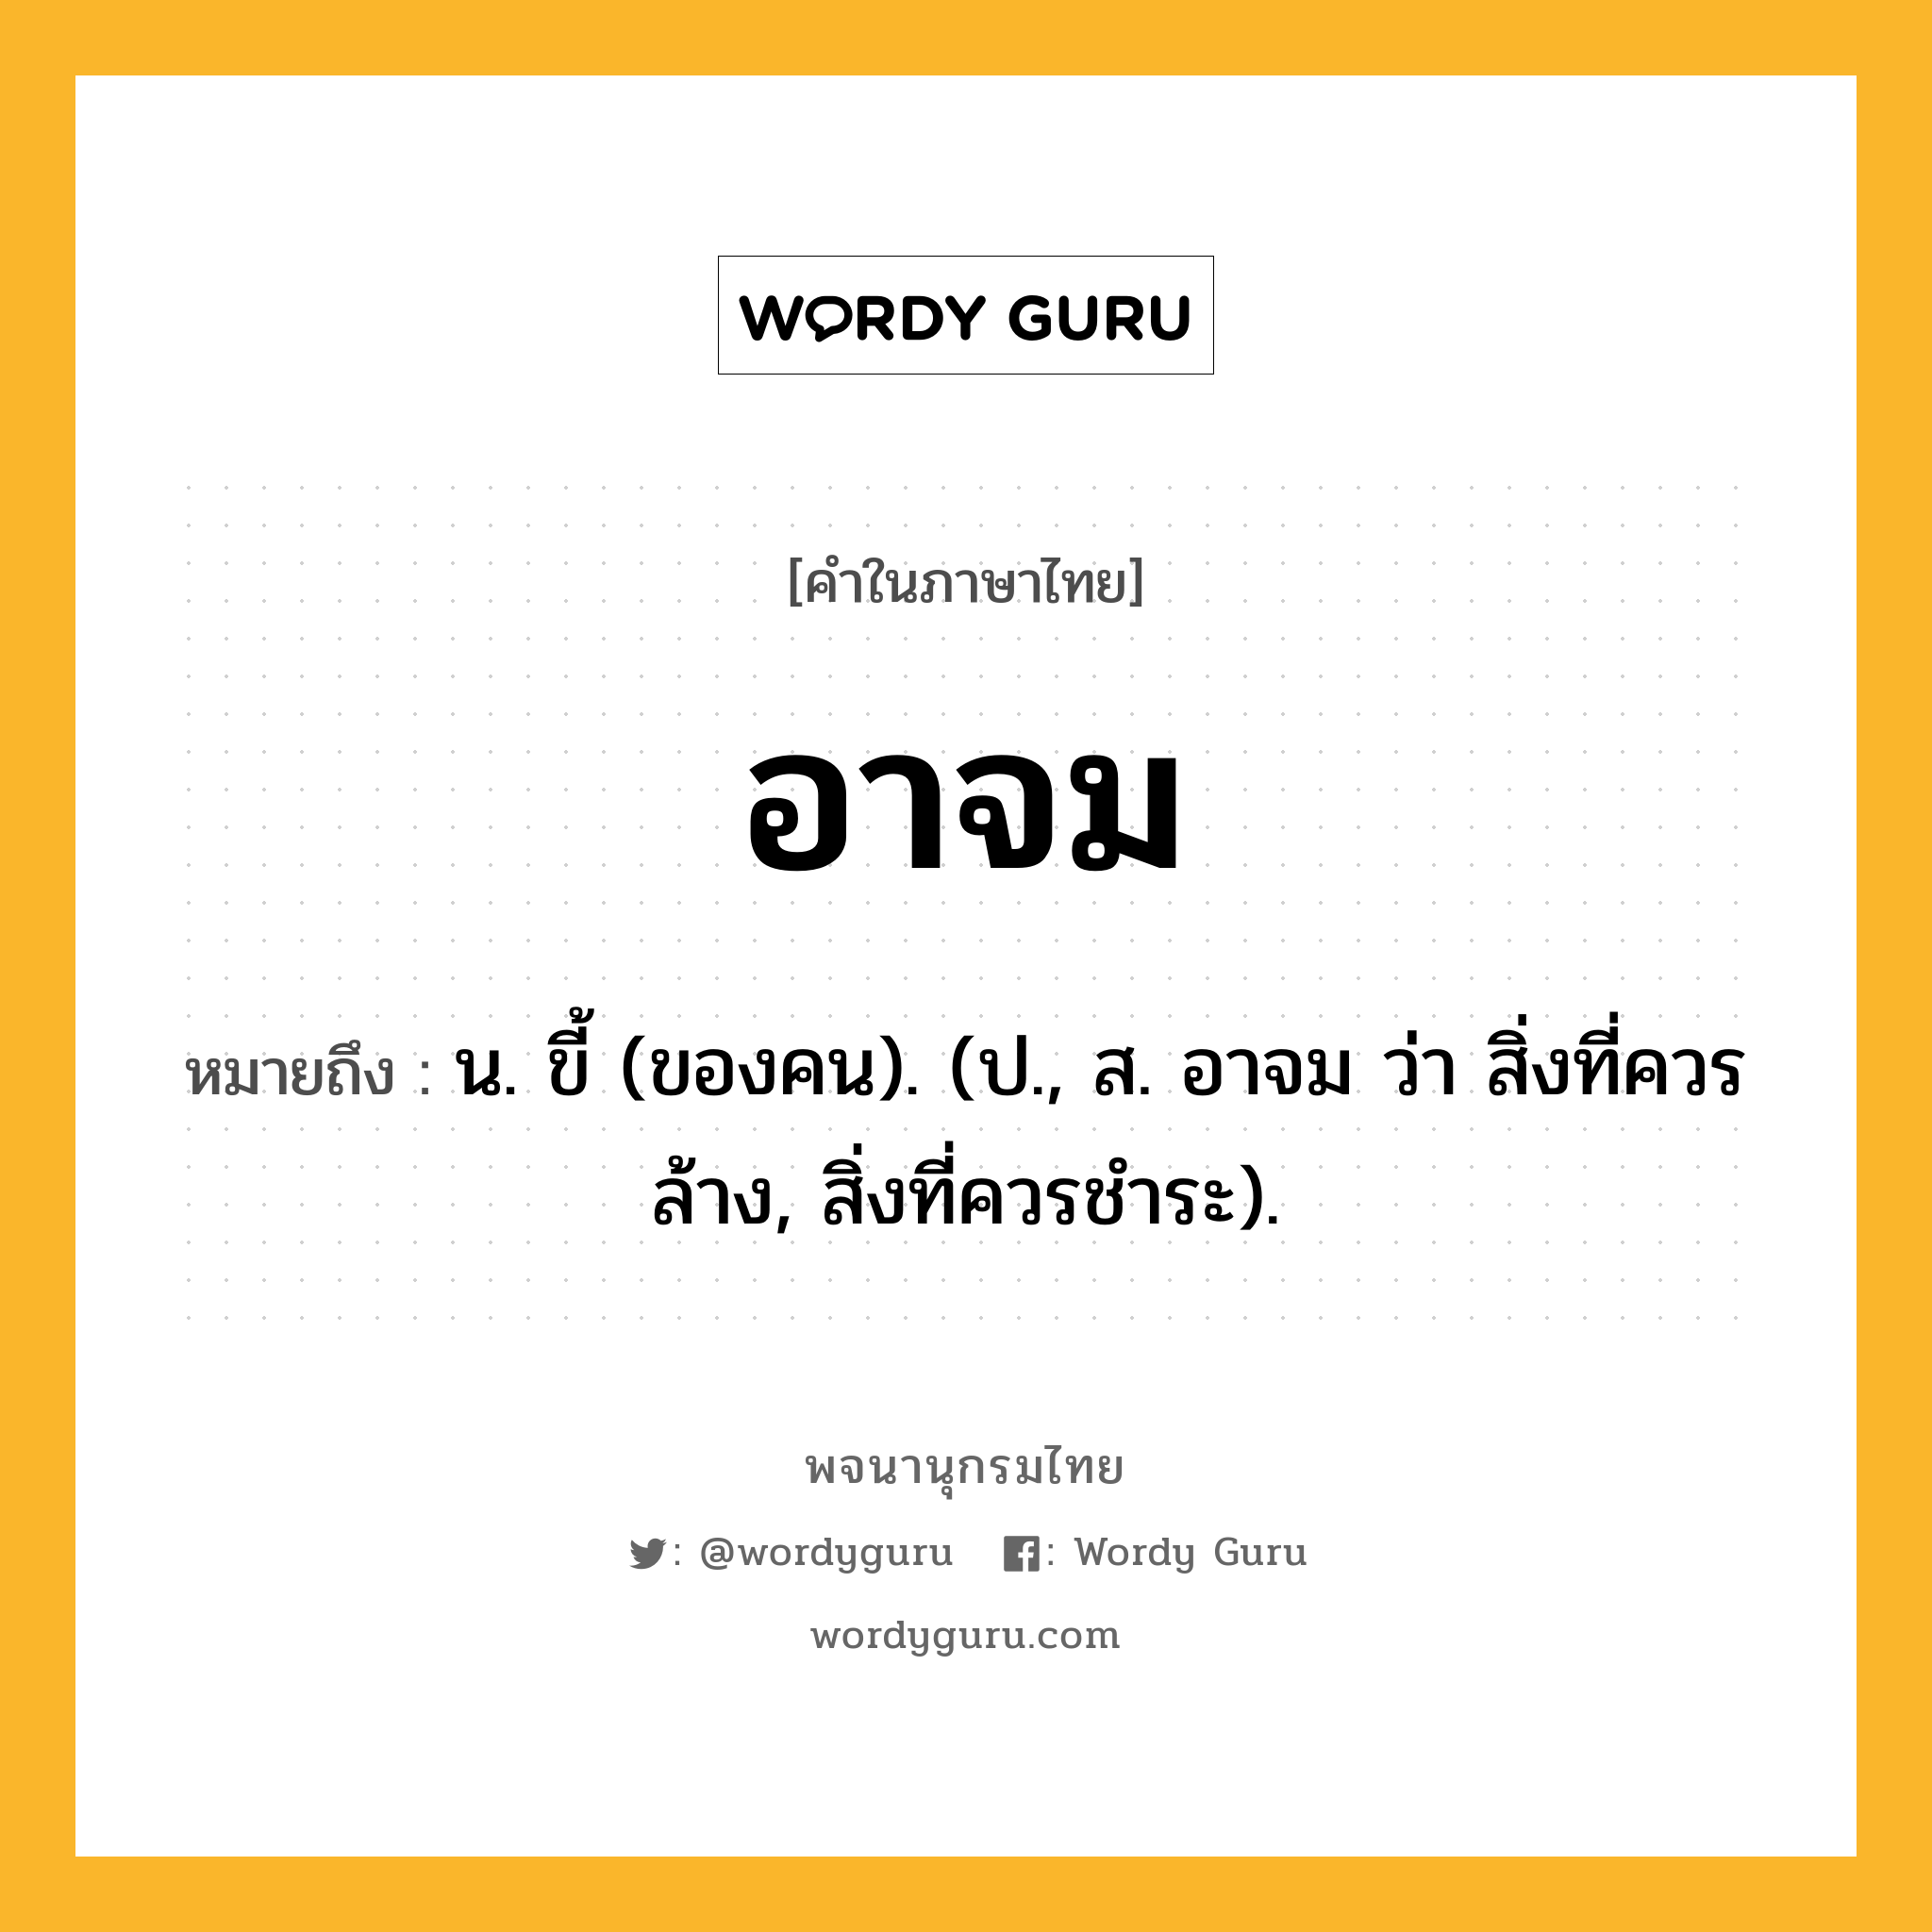 อาจม หมายถึงอะไร?, คำในภาษาไทย อาจม หมายถึง น. ขี้ (ของคน). (ป., ส. อาจม ว่า สิ่งที่ควรล้าง, สิ่งที่ควรชําระ).